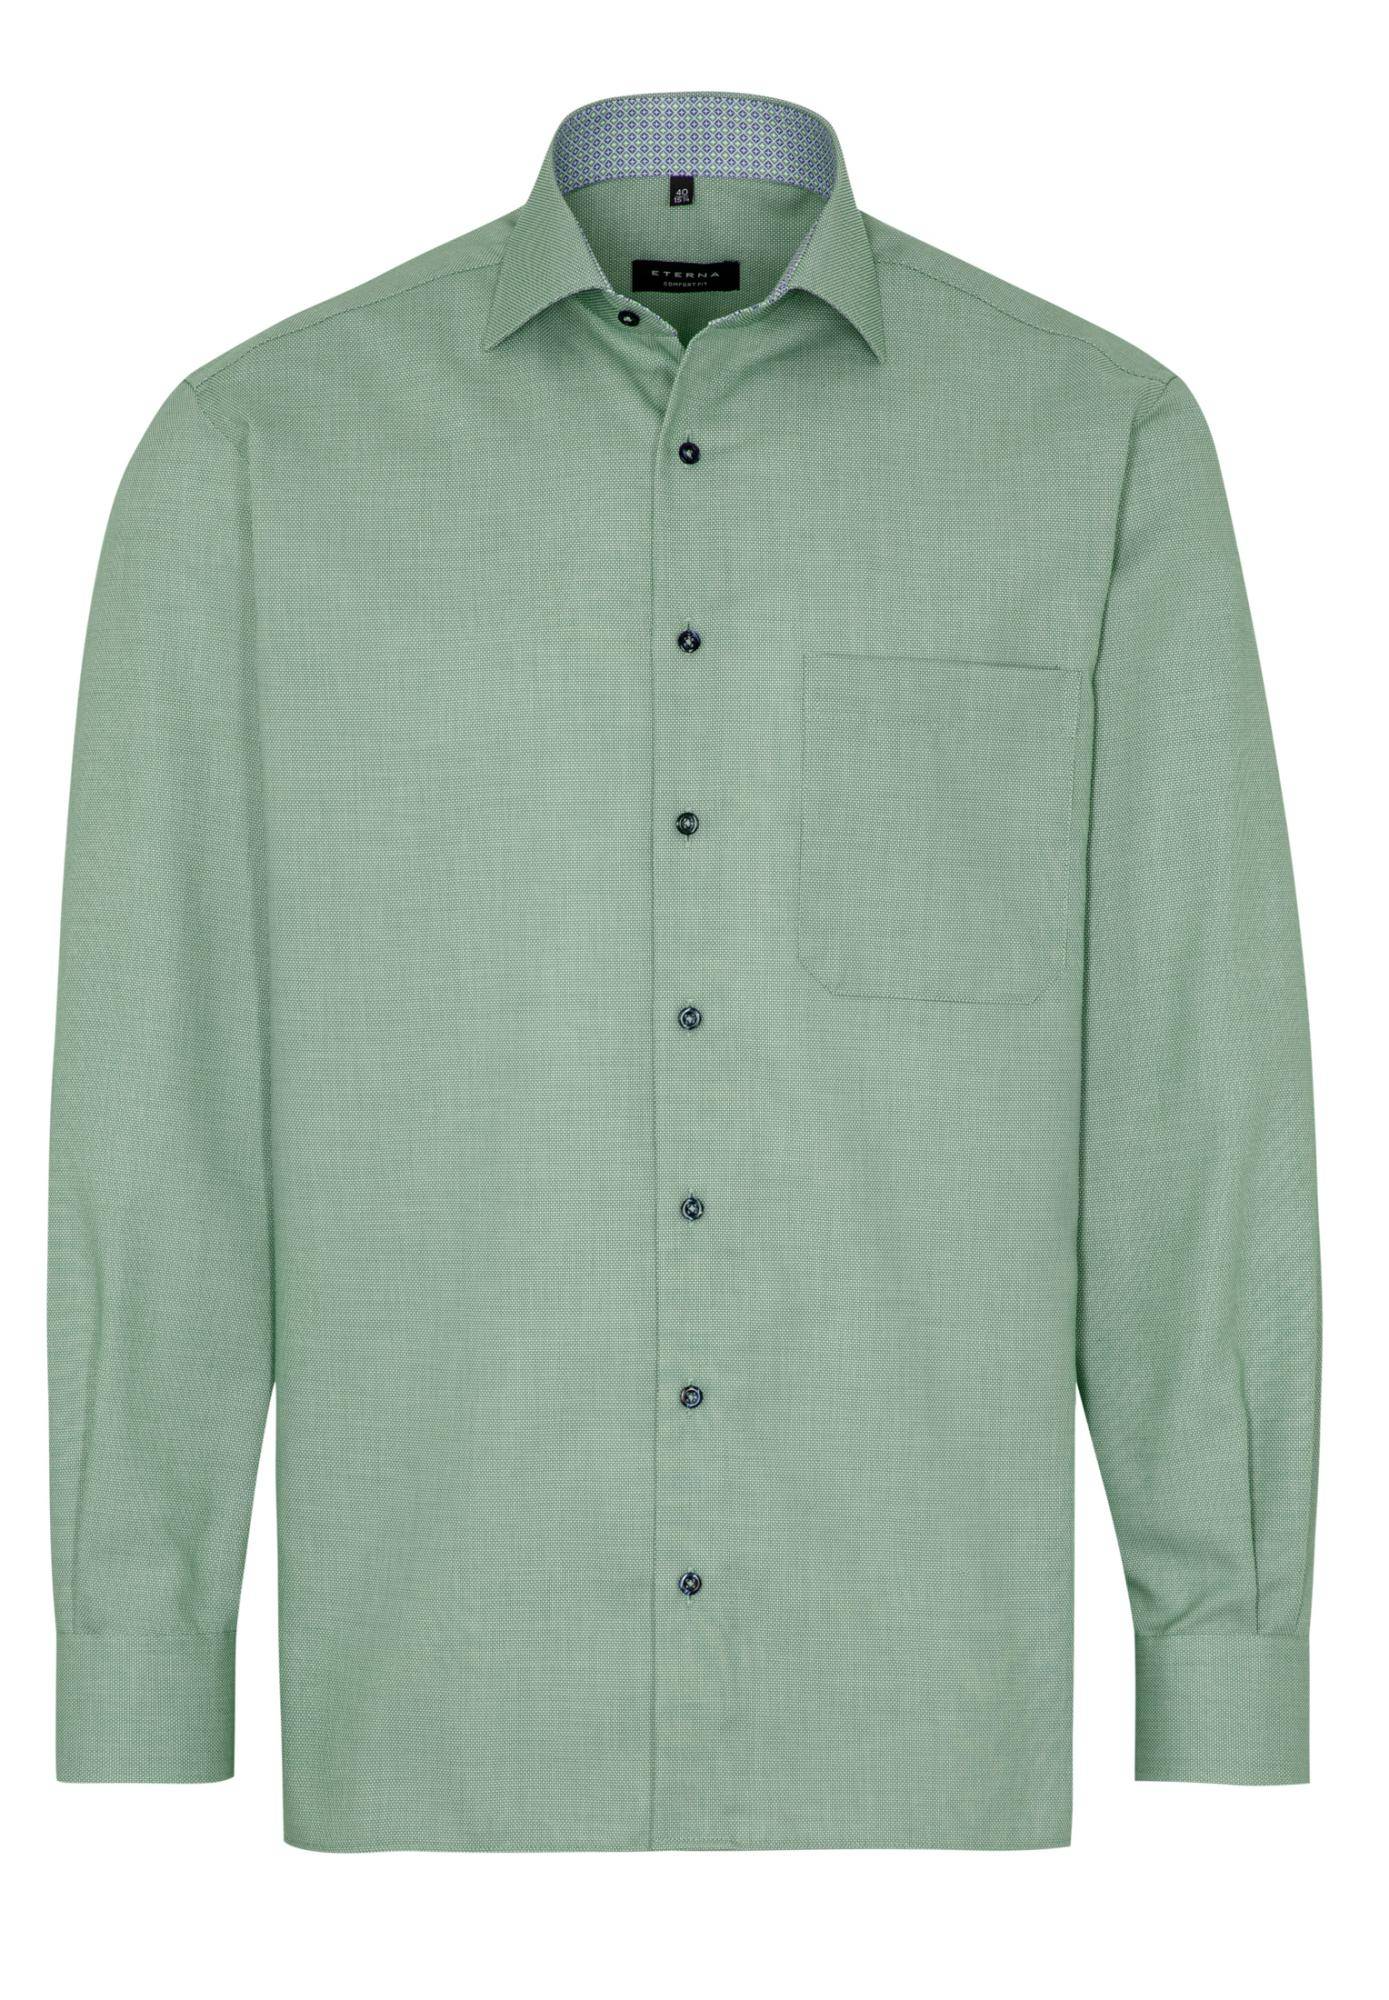 Мужская рубашка ETERNA, зеленая, цвет зеленый, размер 58 - фото 6